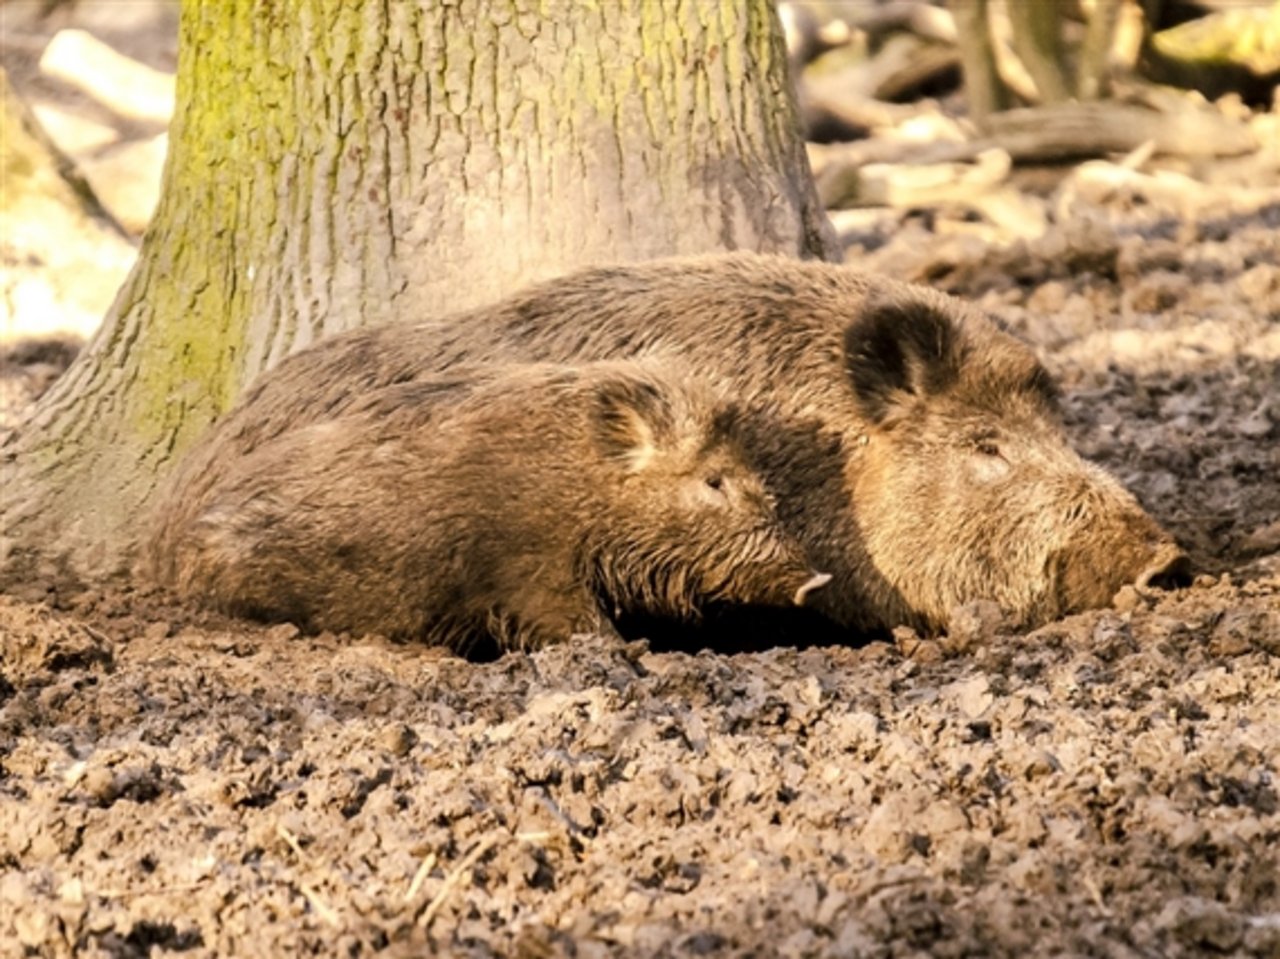 Wildschweine können die Afrikanische Schweinepest (ASP) übertragen. (Symbolbild Pixabay) 